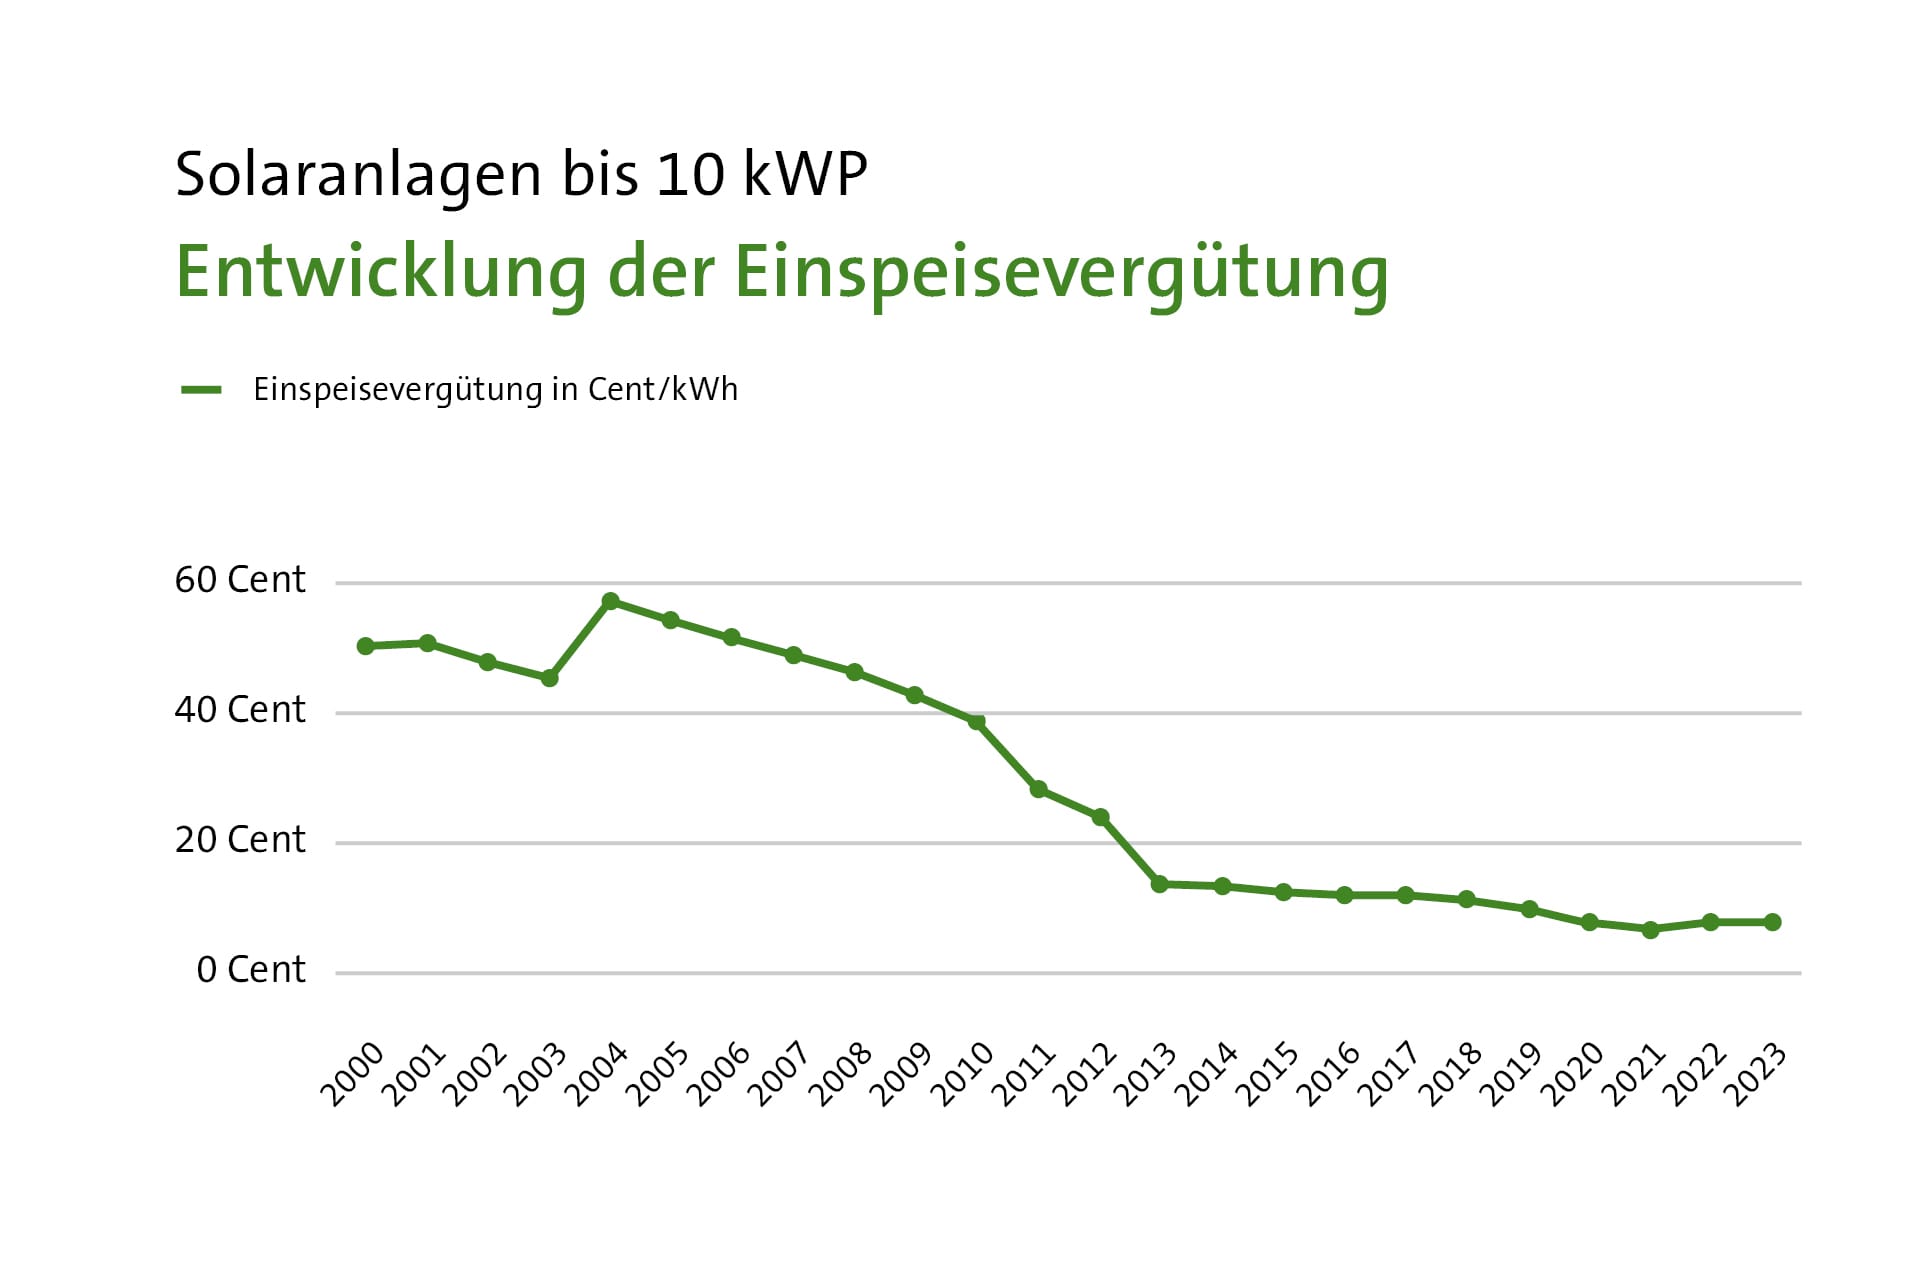 Grafik: Entwicklung der Einspeisevergütung seit dem Jahr 2000